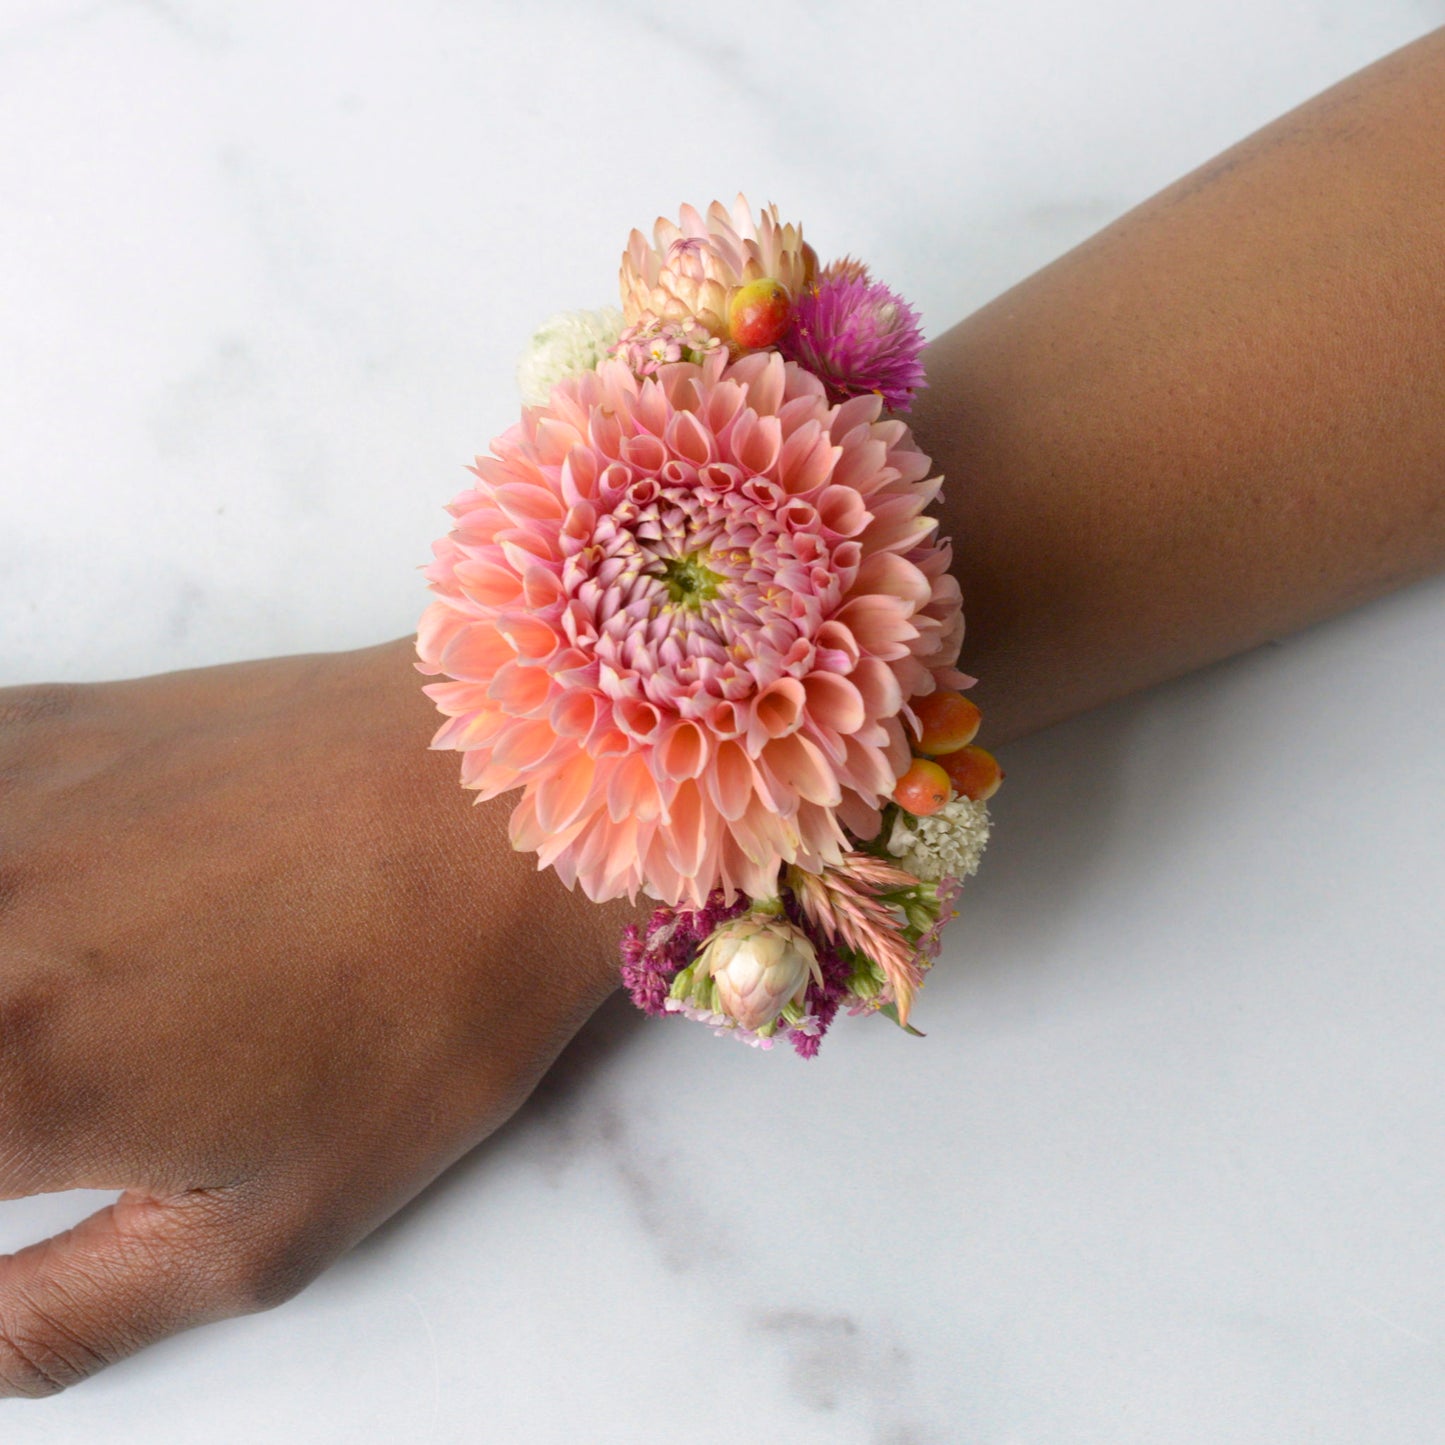 Floral-Wrist-Cuff-1